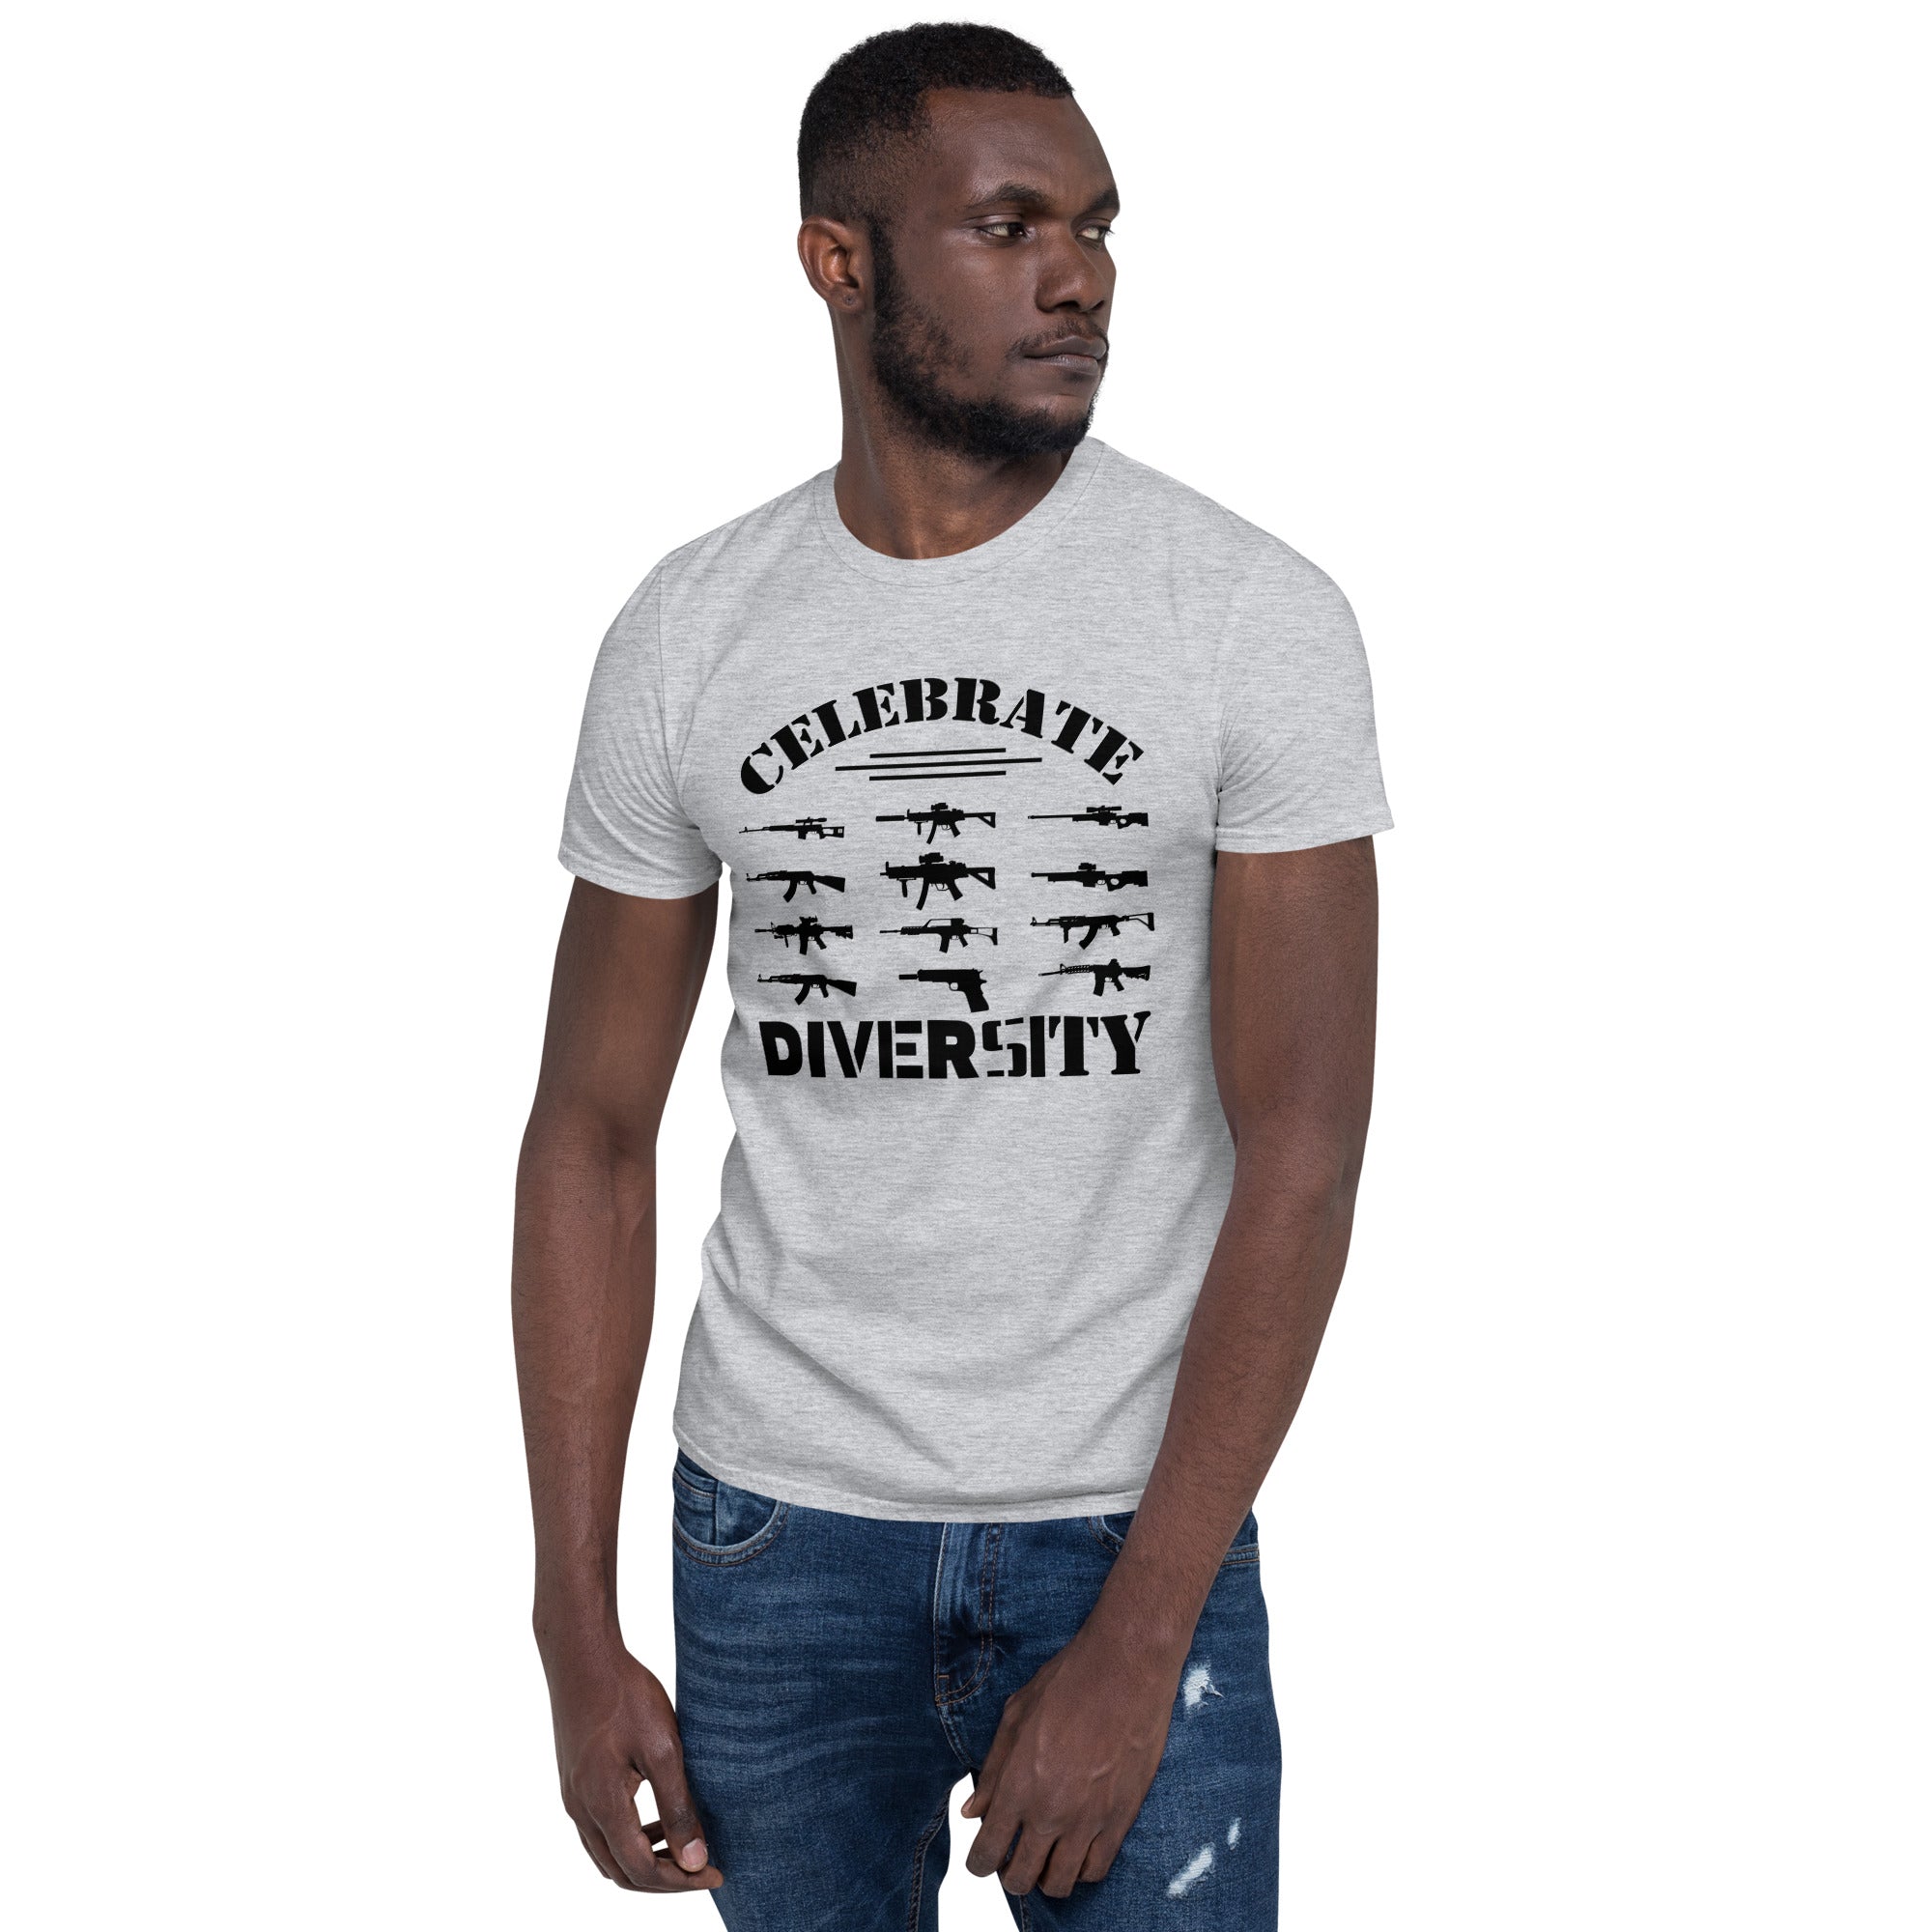 Celebrate Diversity - Short-Sleeve Unisex T-Shirt